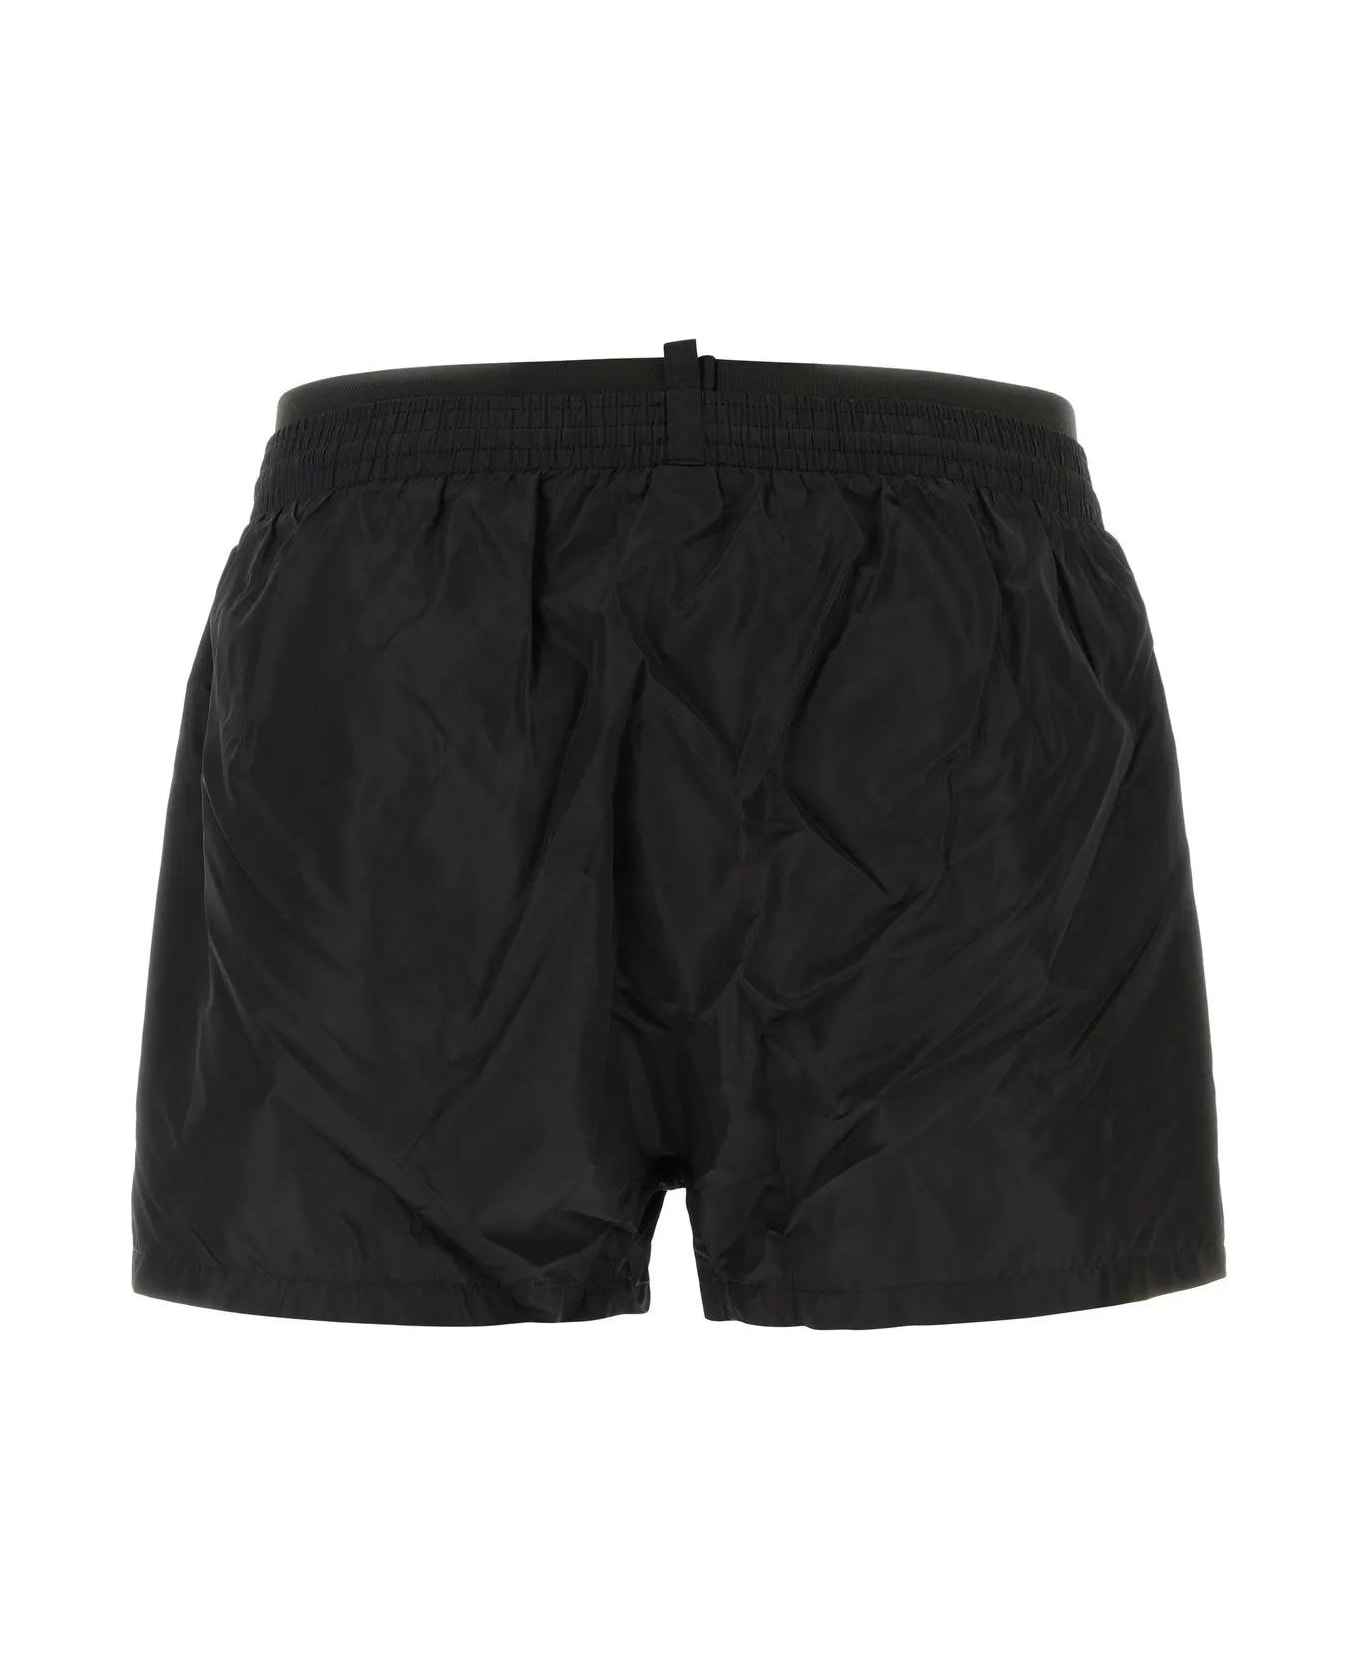 Dsquared2 Black Nylon Swimming Shorts - Black